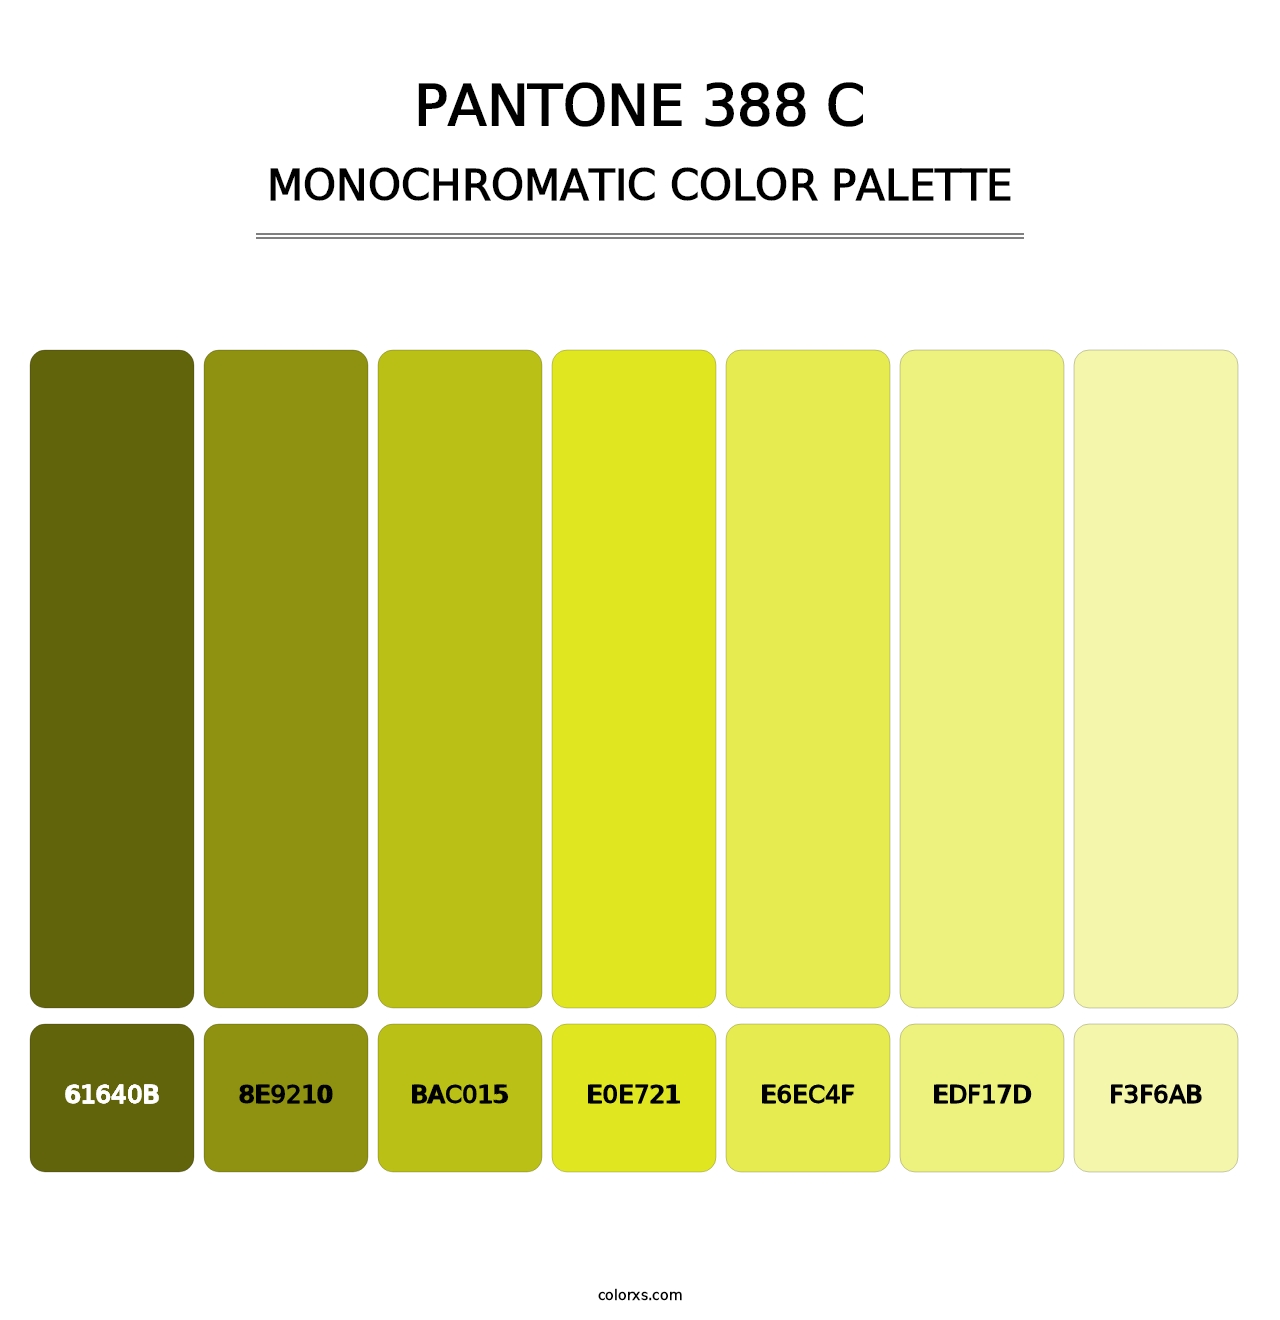 PANTONE 388 C - Monochromatic Color Palette